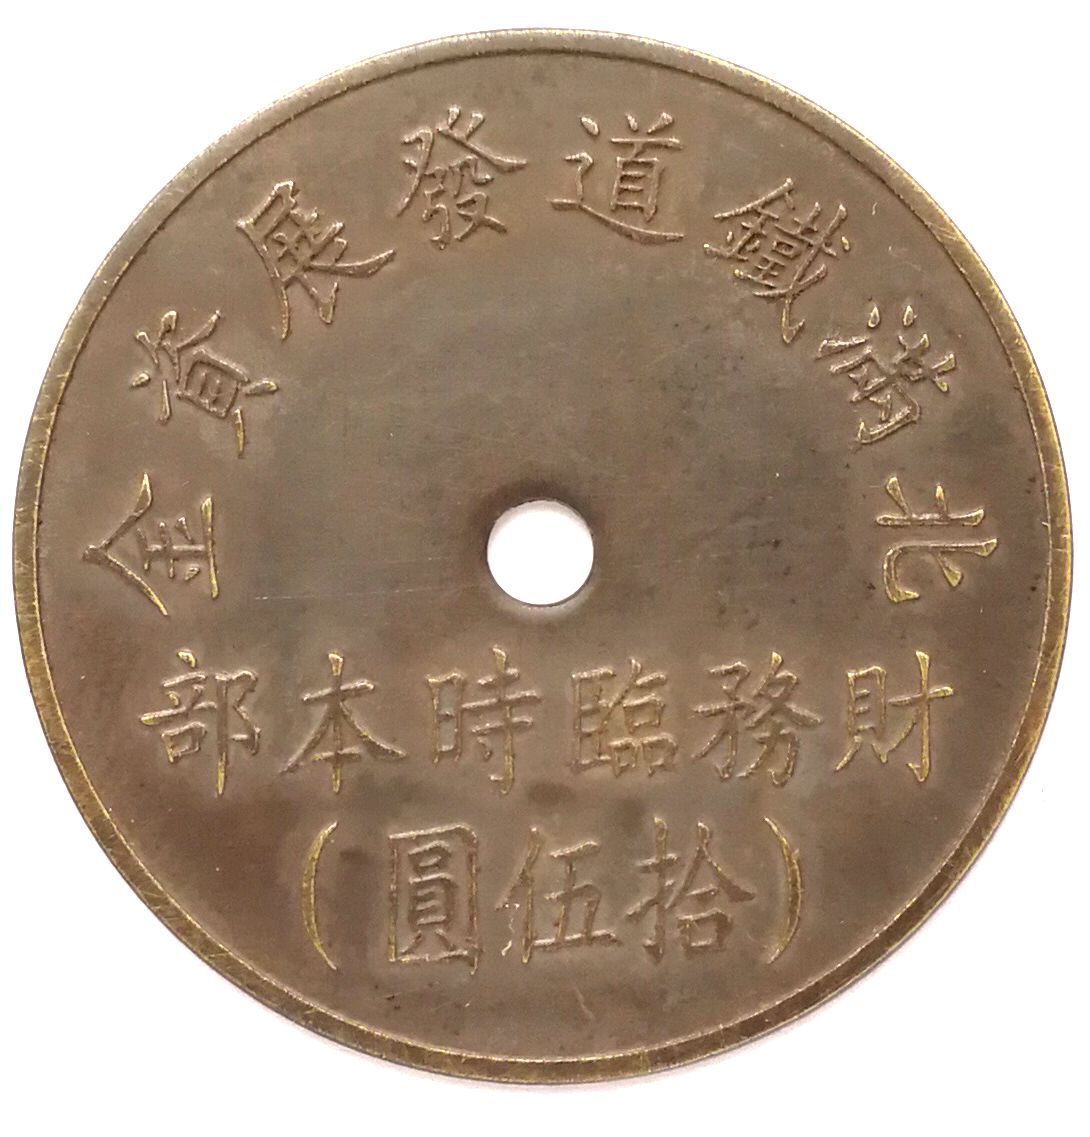 BT475, North Manchukuo Railway Construction Fund, Manchukuo Token, 15 Yen 1945